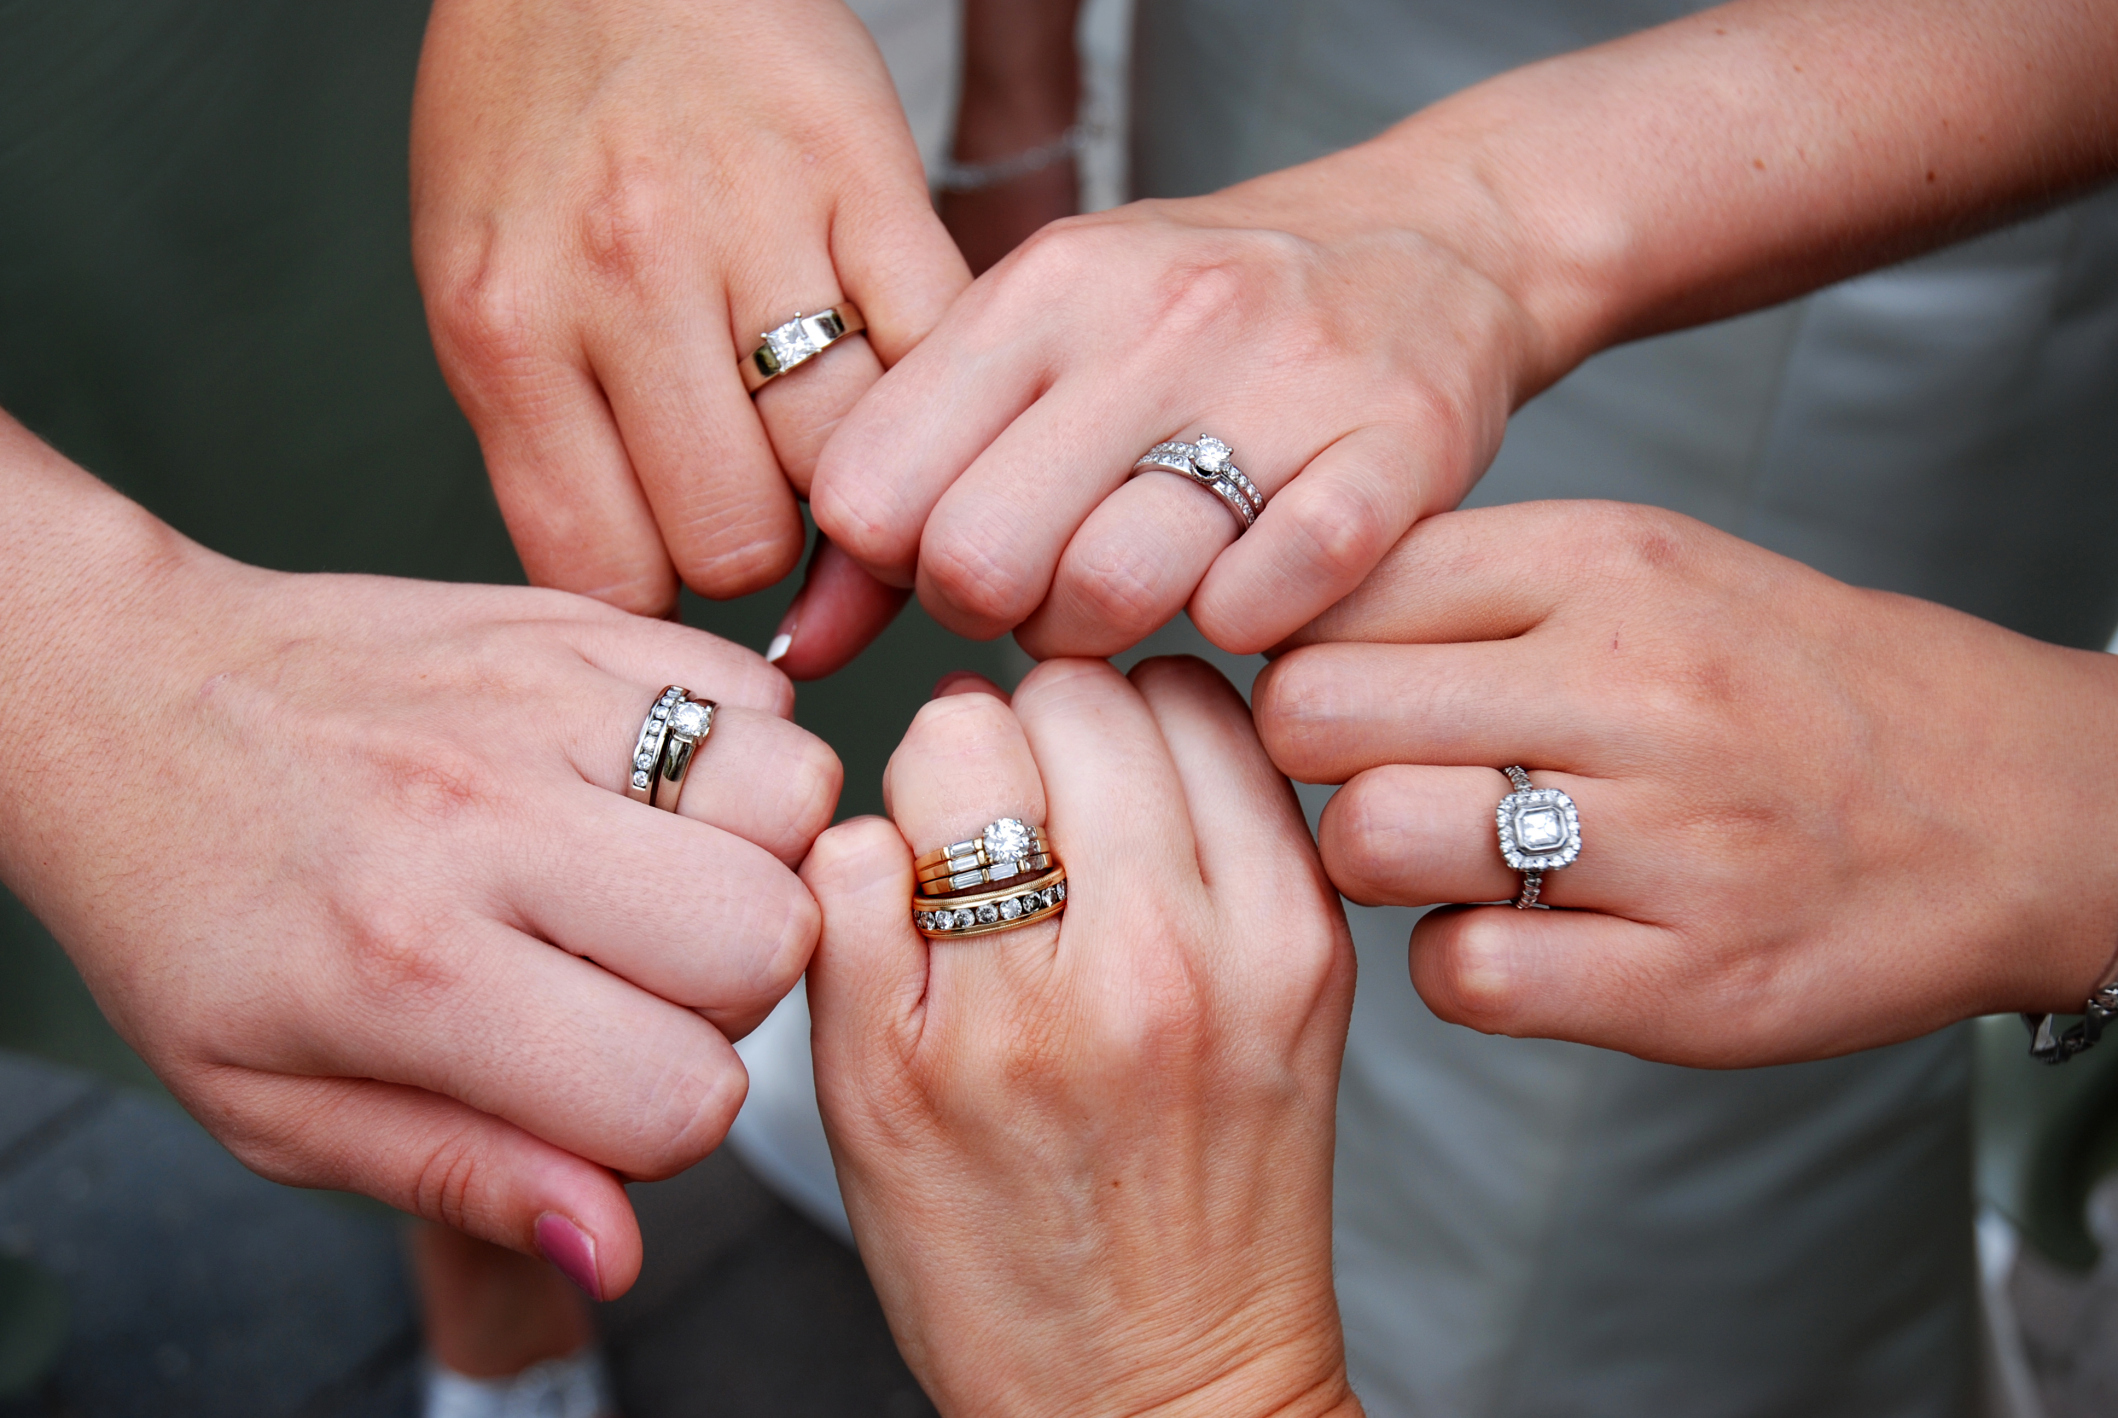 Kilometers verkoper lancering What's the alternative to wearing two rings? | Easy Weddings